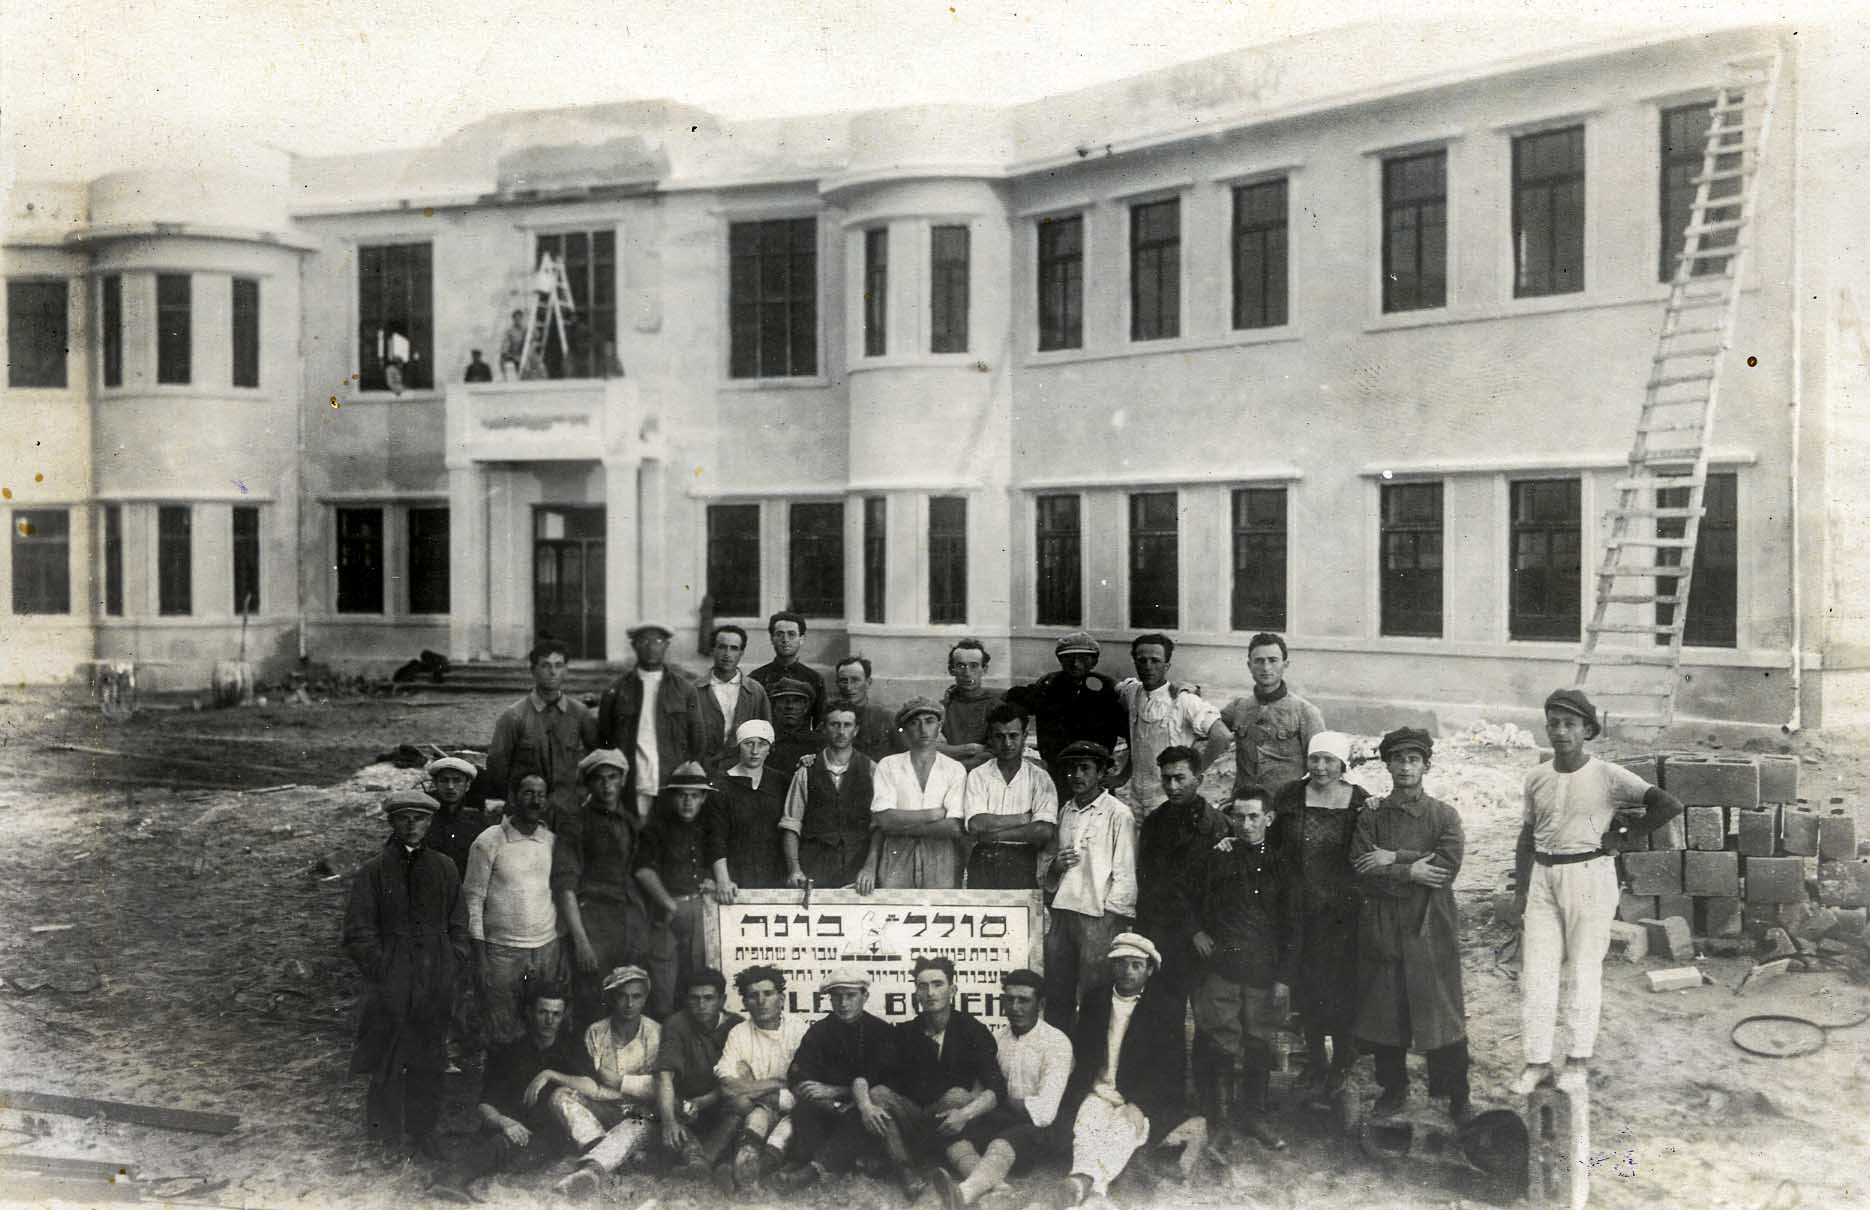 קבוצת פועלי הבניין 'יסוד' בתל אביב, על רקע בית הספר תל נורדוי בגמר בנייתו. בית הספר נבנה על ידי סולל בונה (מתוך אוסף מכון לבון)